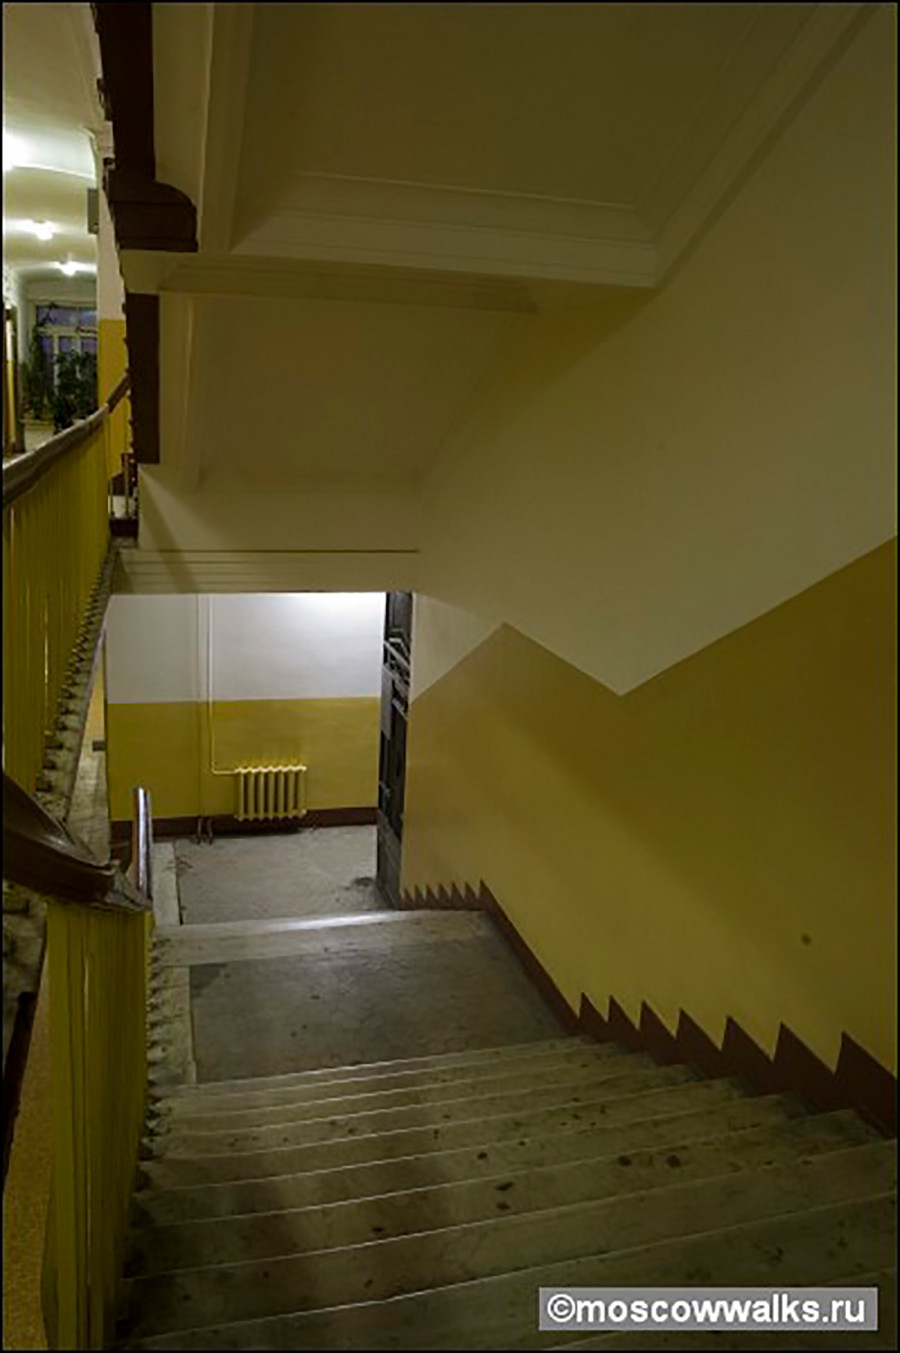 Kuća Nirnzejea, stepenište.
